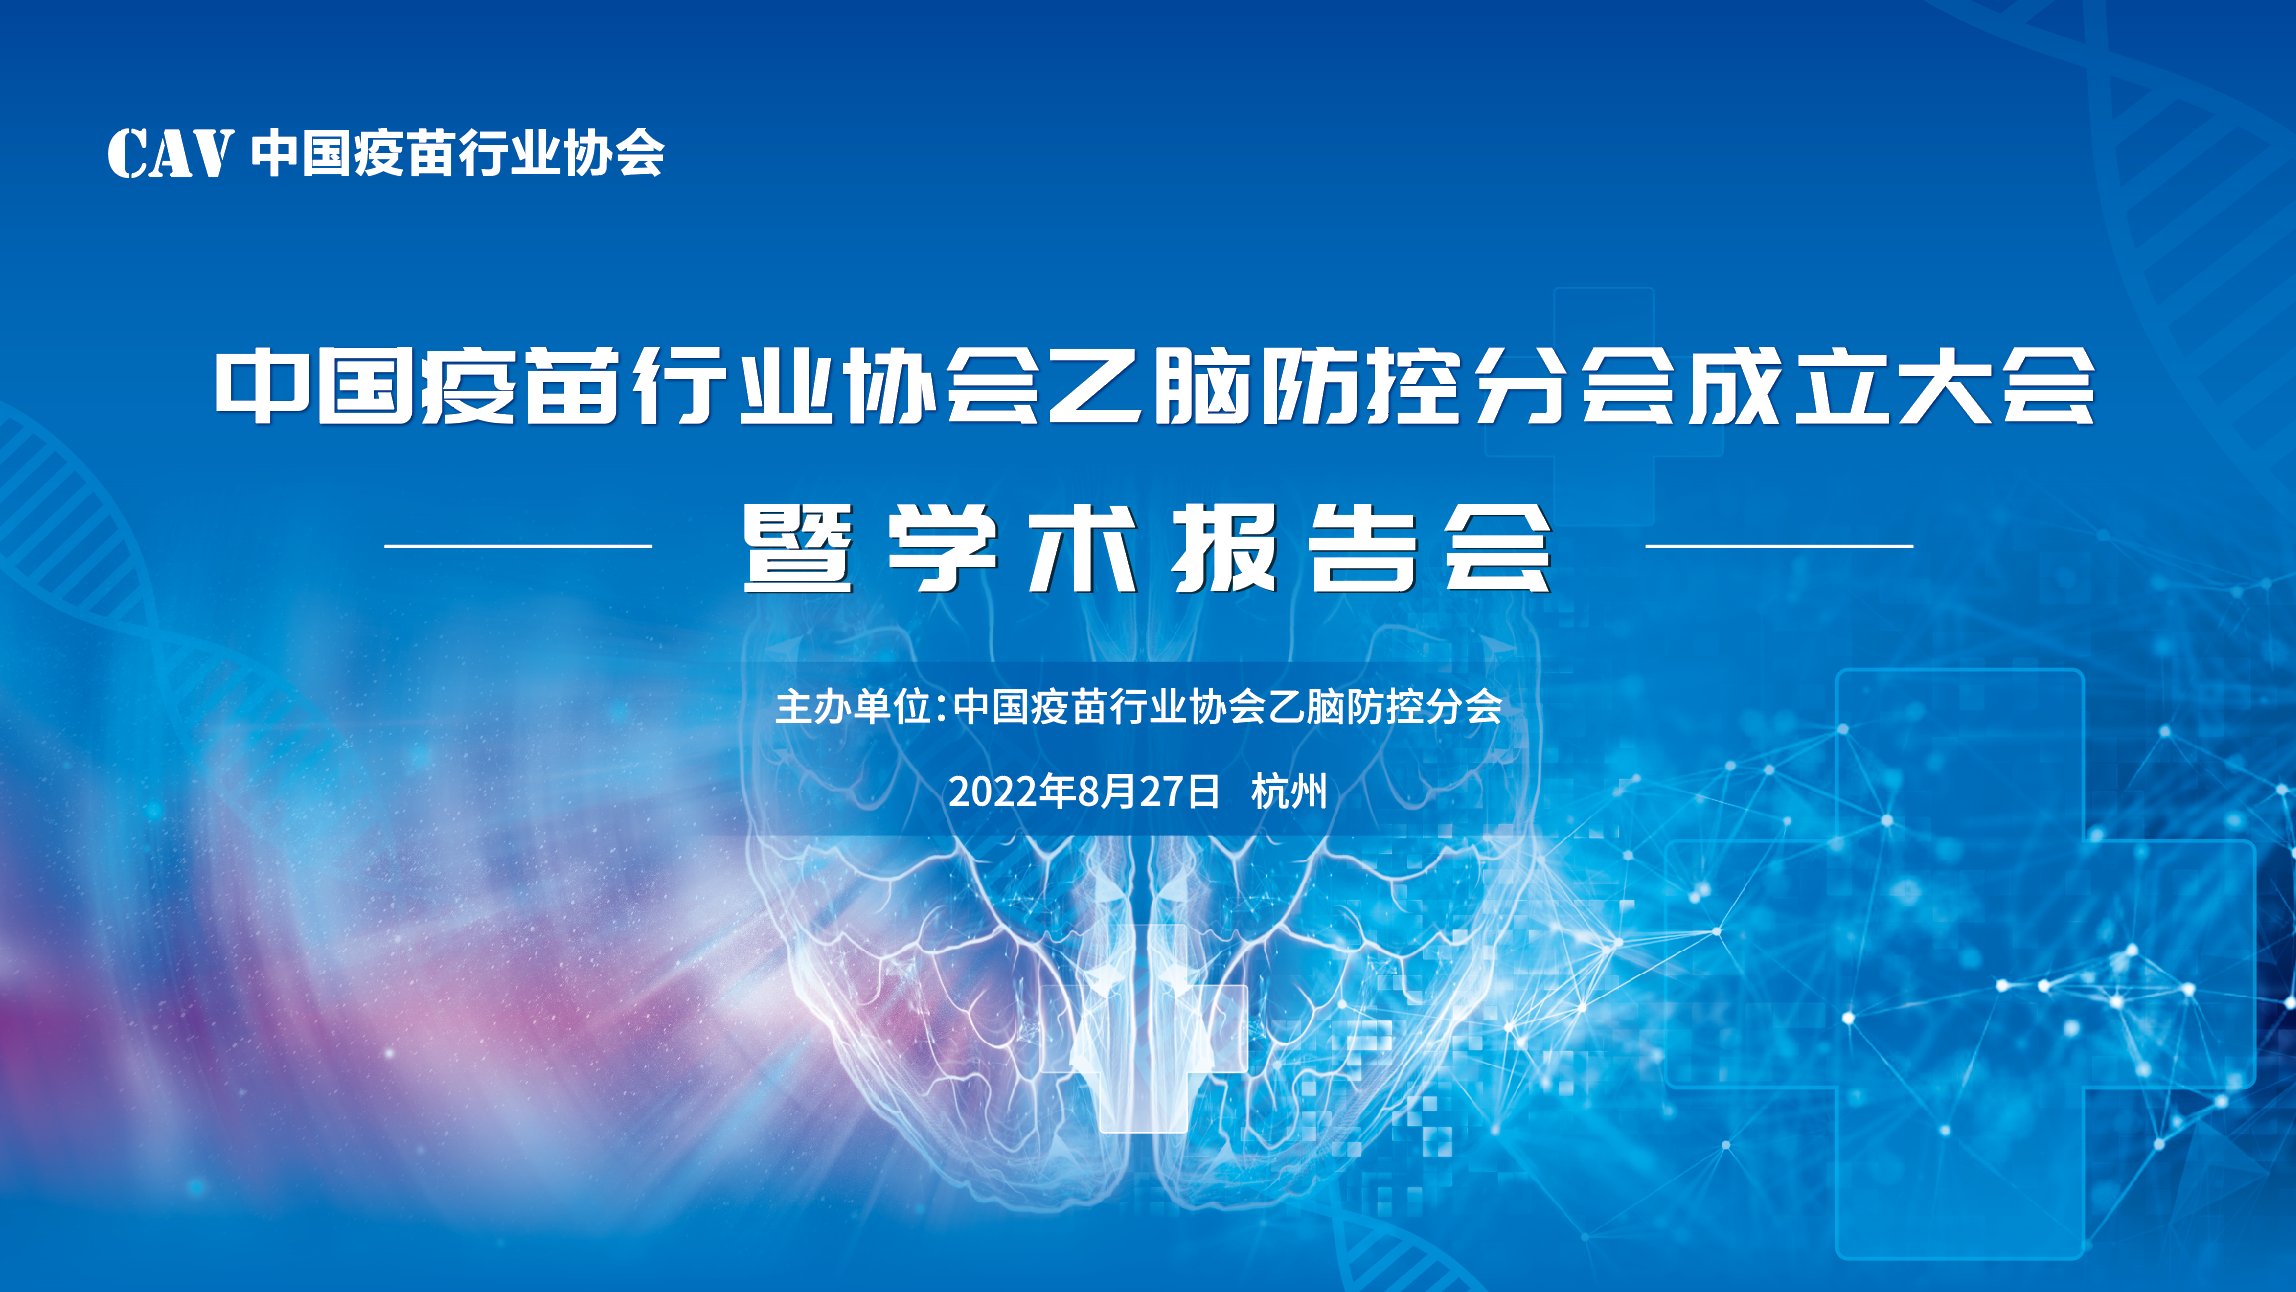 中国疫苗行业协会乙脑防控分会成立大会暨学术报告会